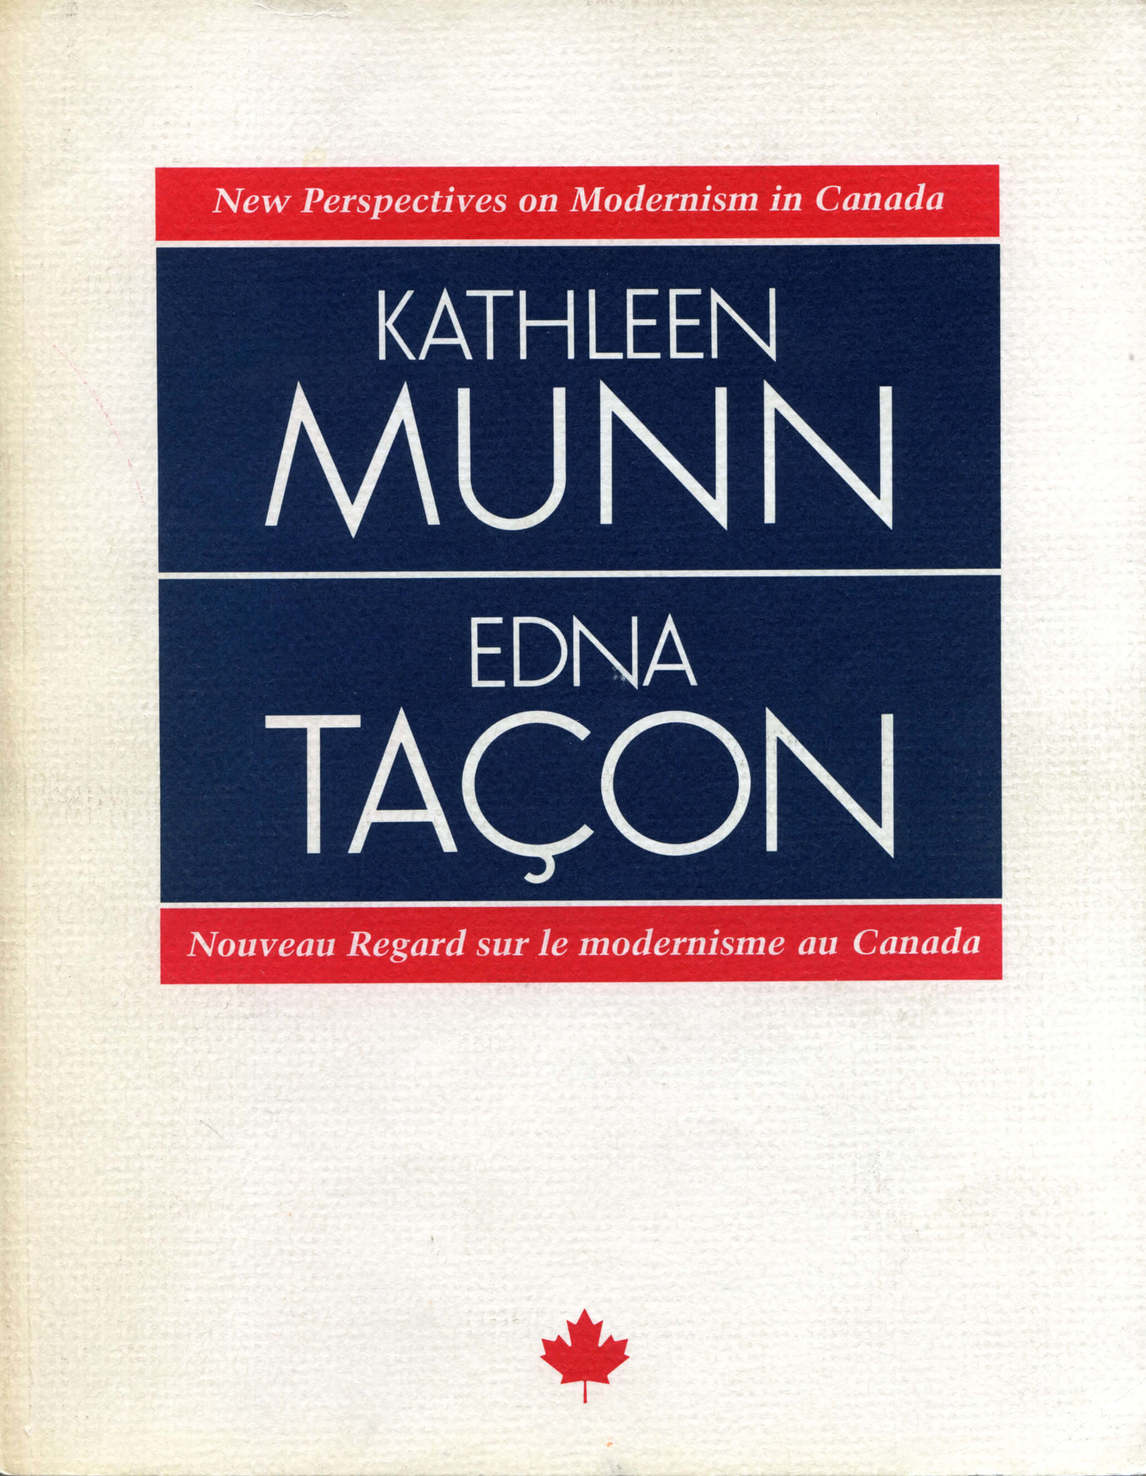 Joyce-Zemans, cover of New Perspectives: Kathleen Munn and Edna Taçon